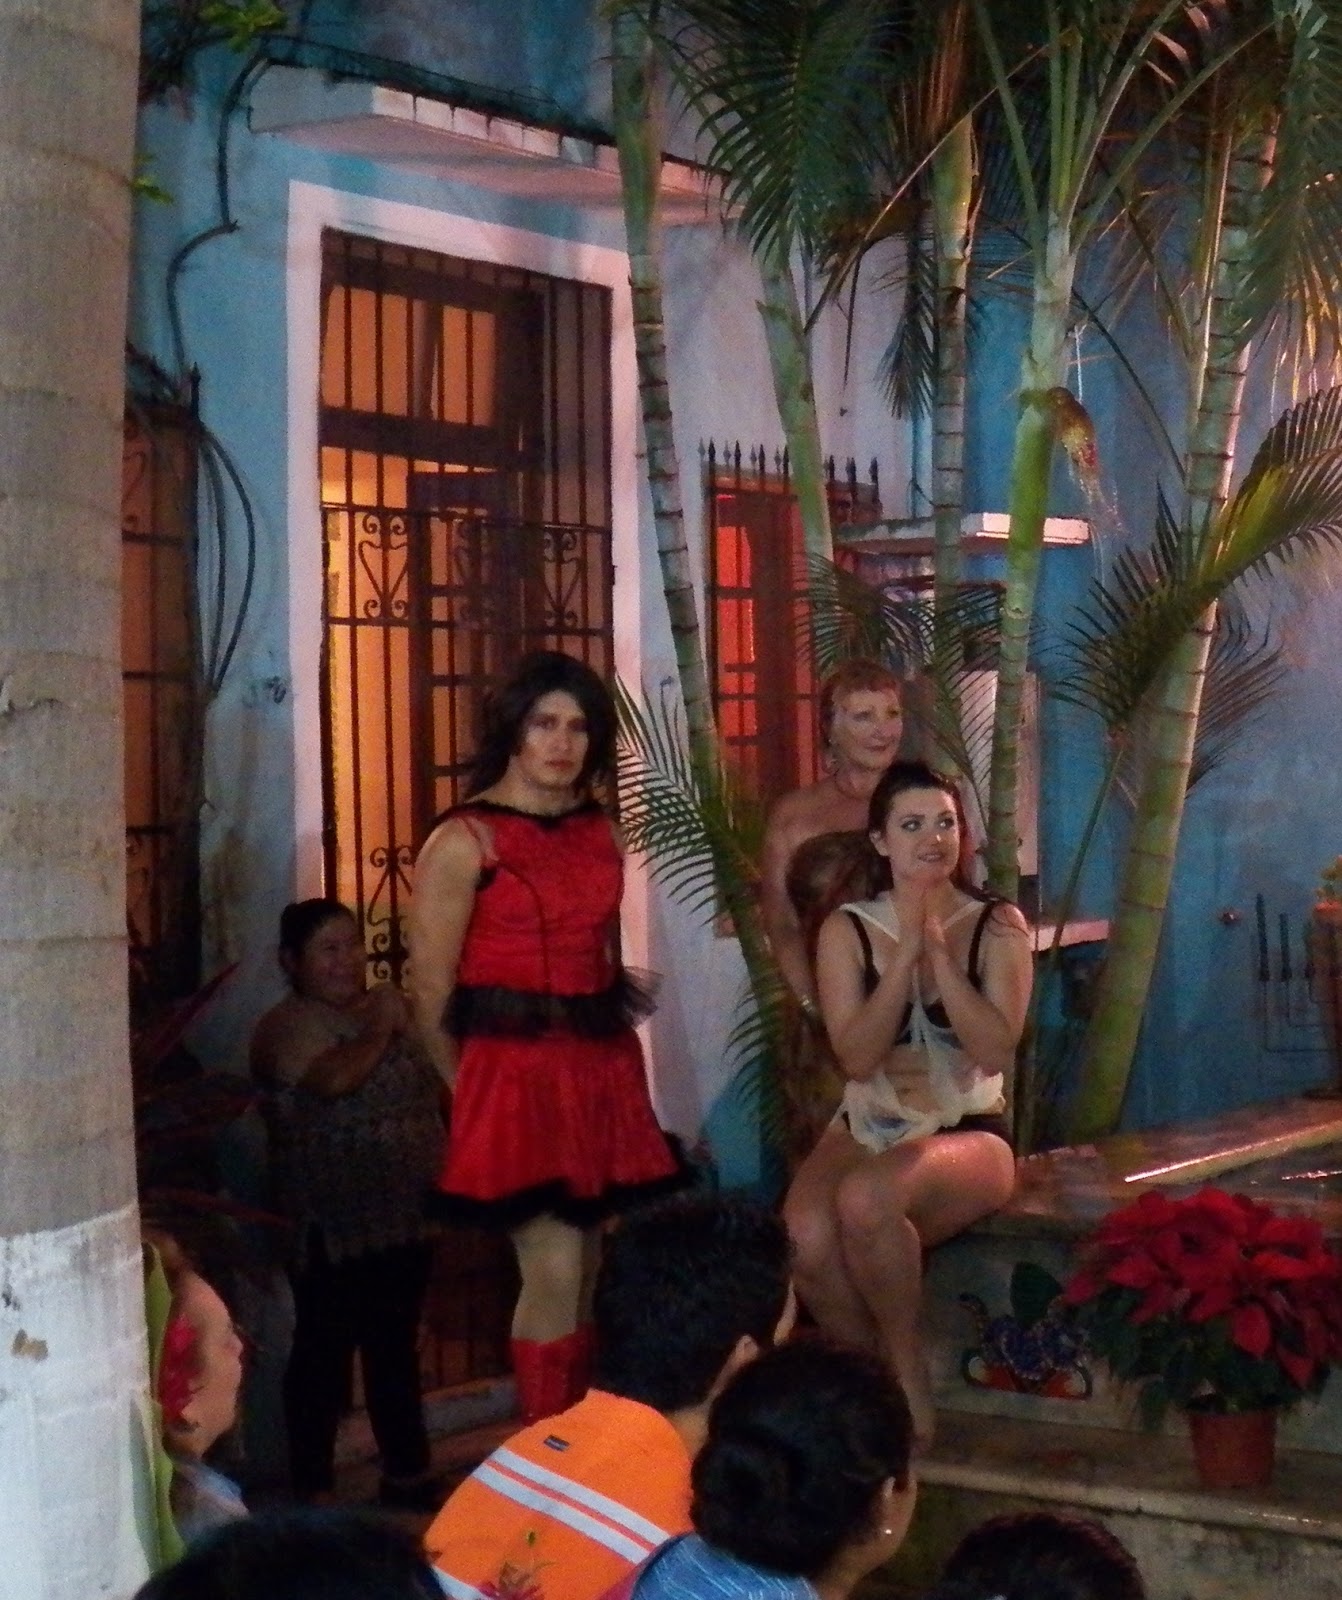 Prostitutes in Merida